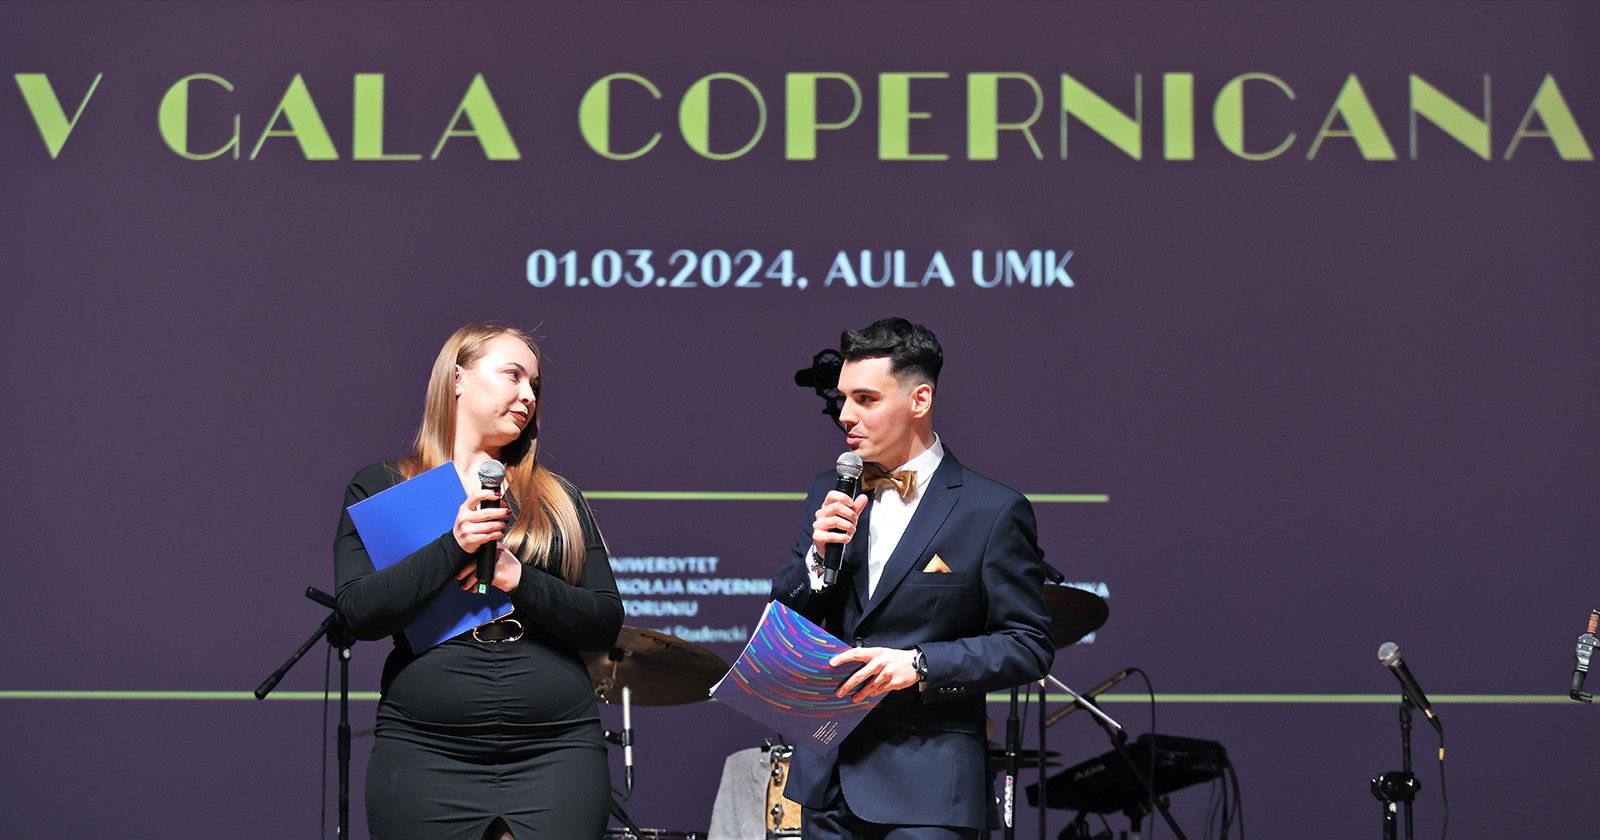 Galę poprowadzili Klaudia Krajnik i Kajetan Szmul Dwie osoby na scenie z mikrofonami, a nimi wyświetlony napis "V Gala Copernicana"